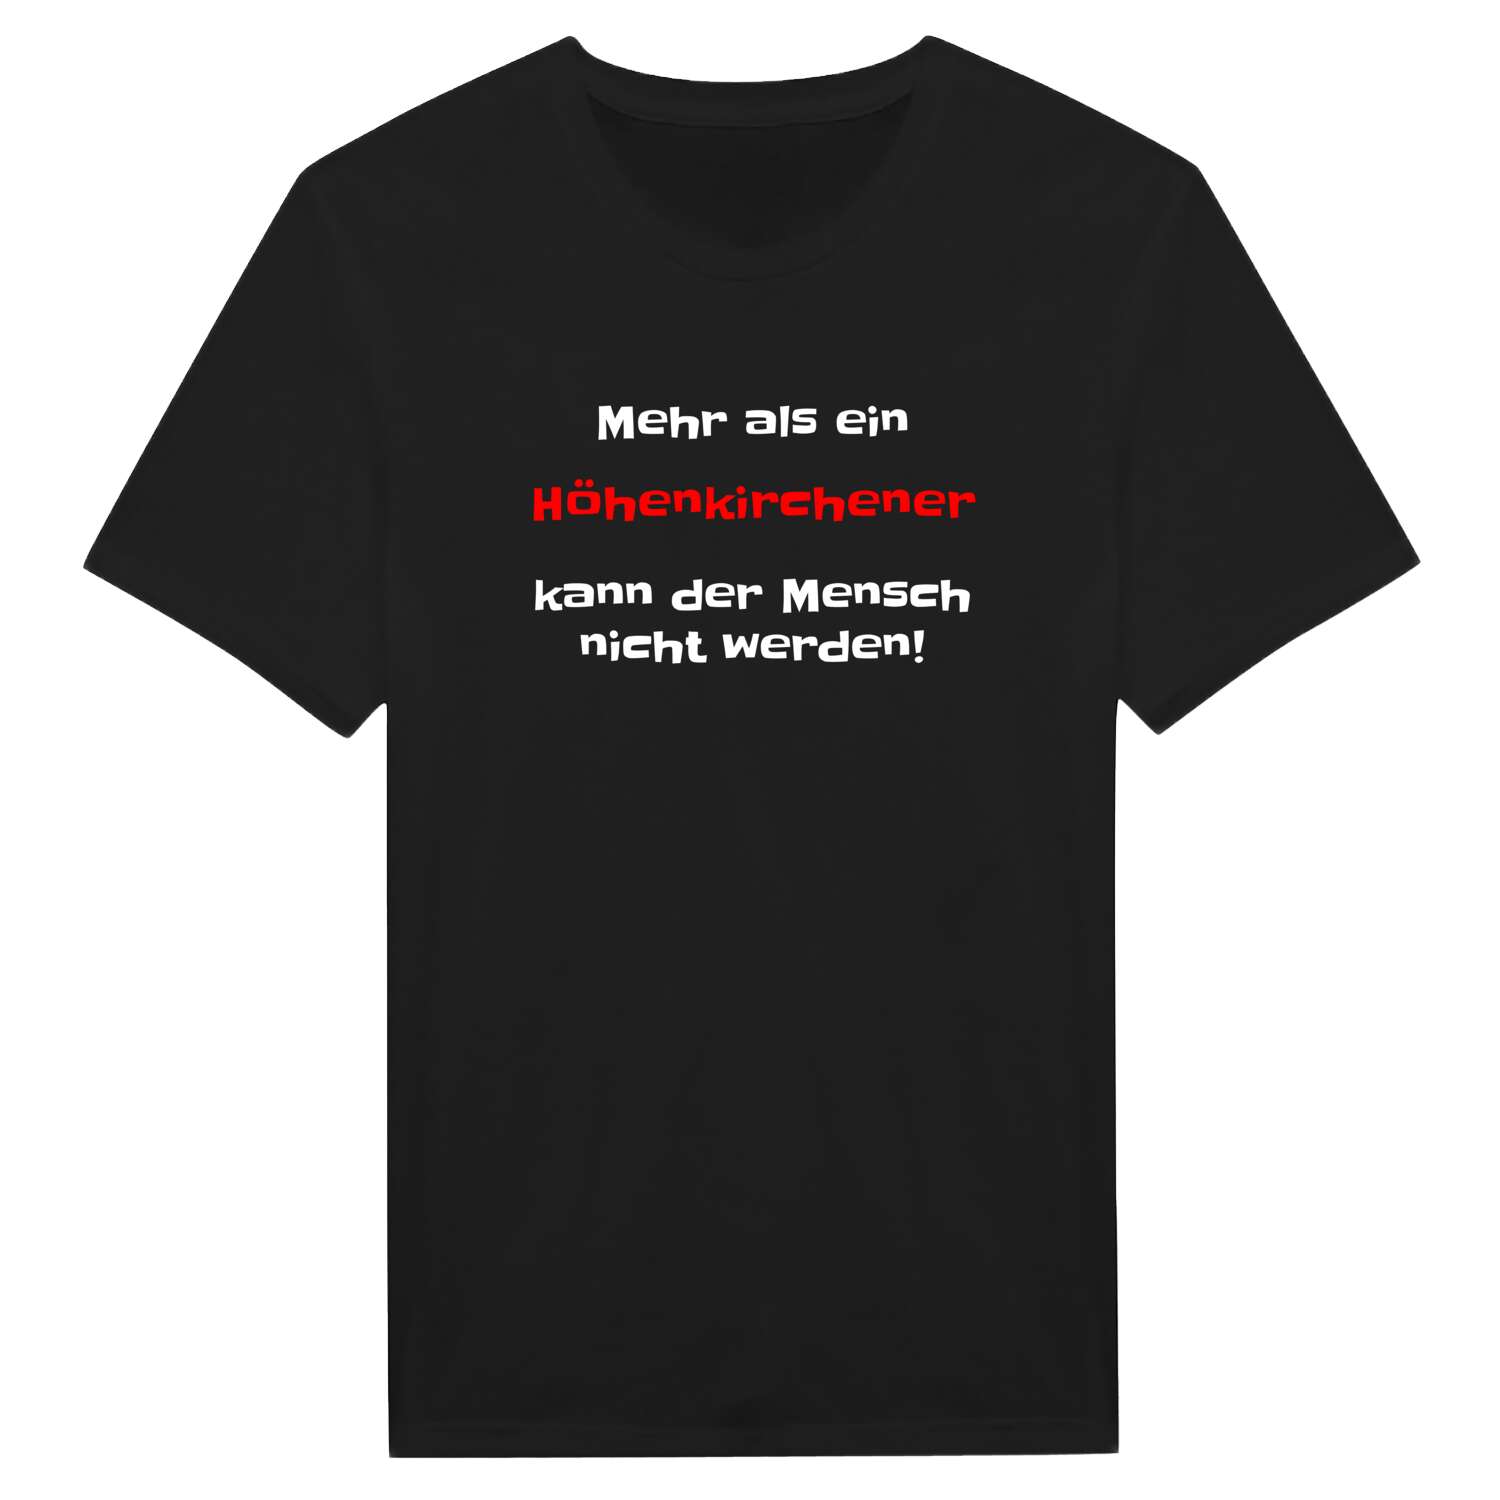 Höhenkirchen T-Shirt »Mehr als ein«